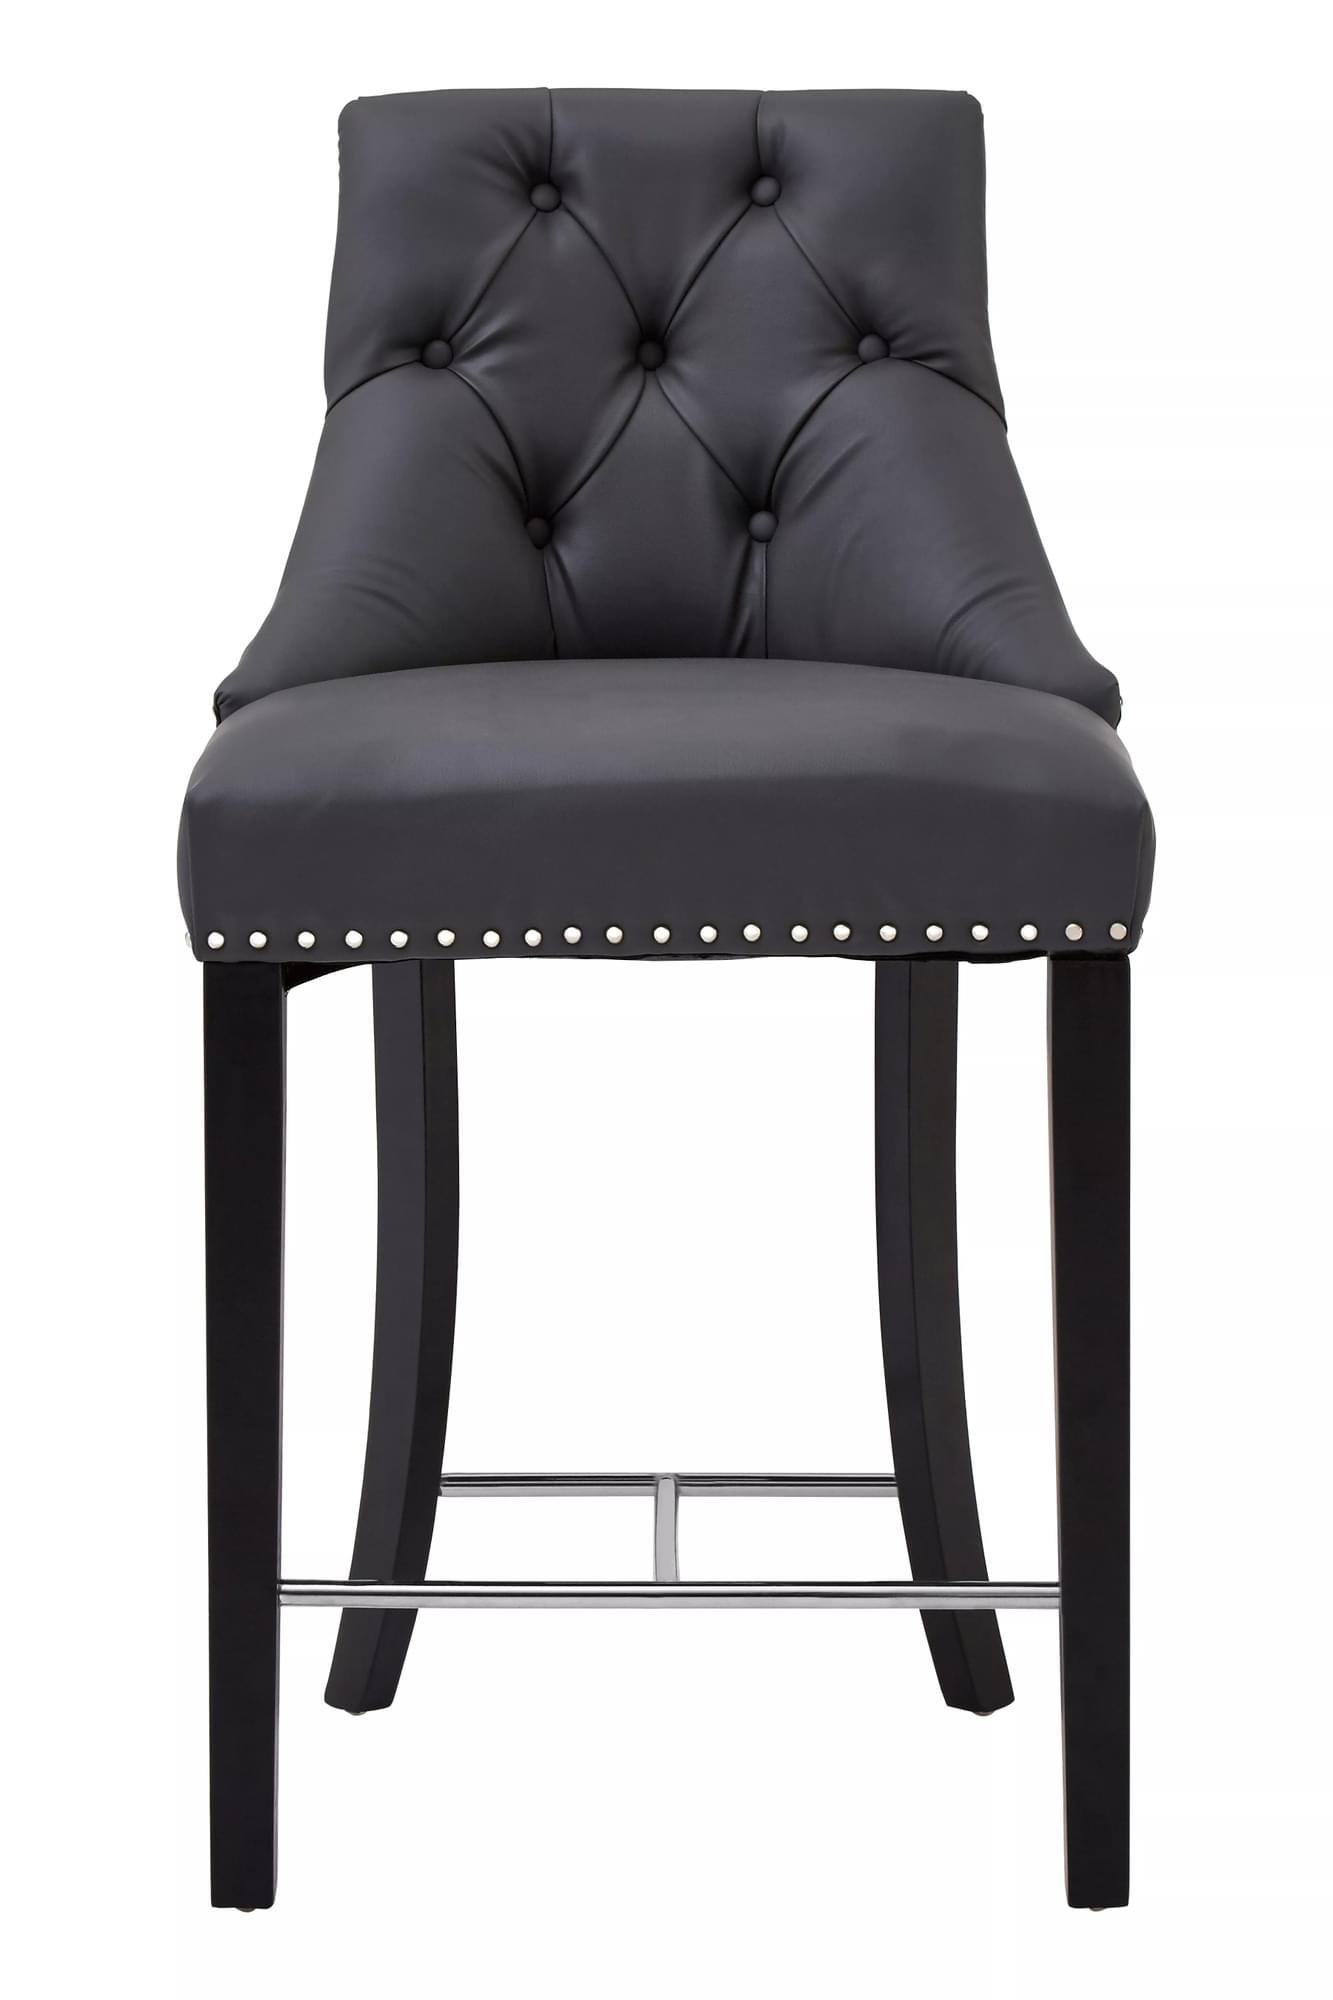 Interiors by Premier Regents Park Faux Leather Bar Chair